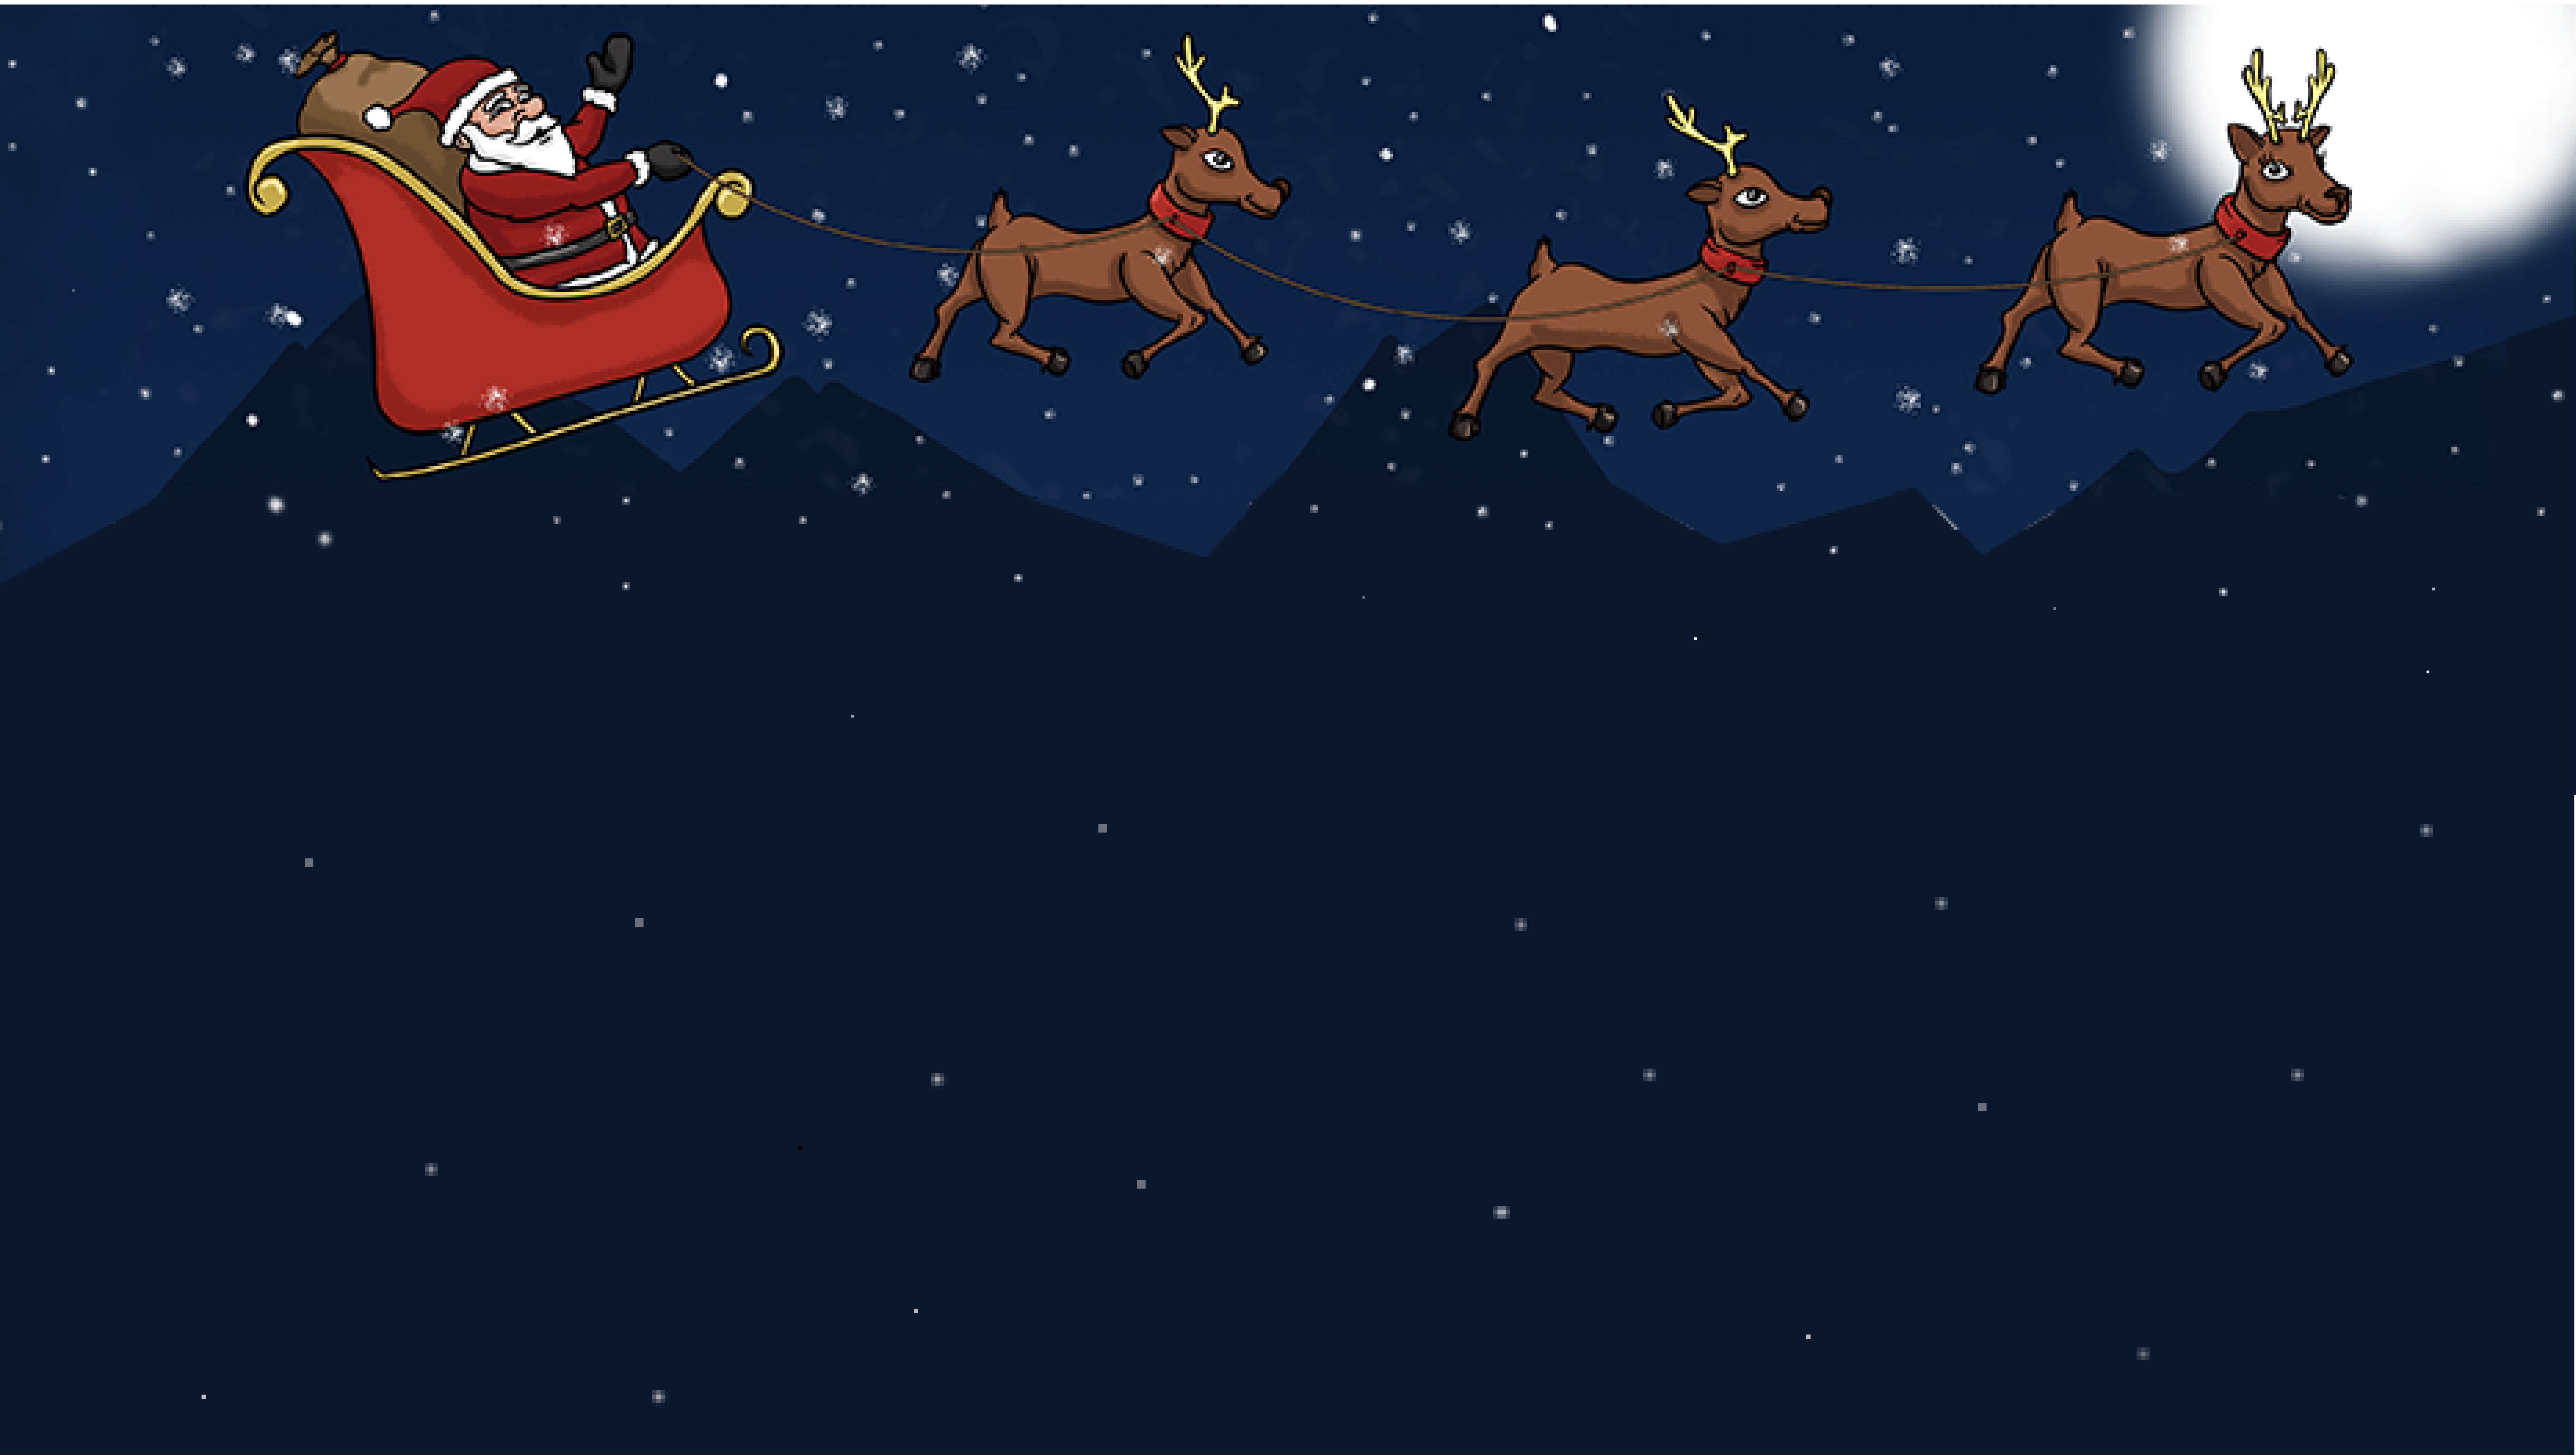 Help Santa Save Christmas project thumbnail